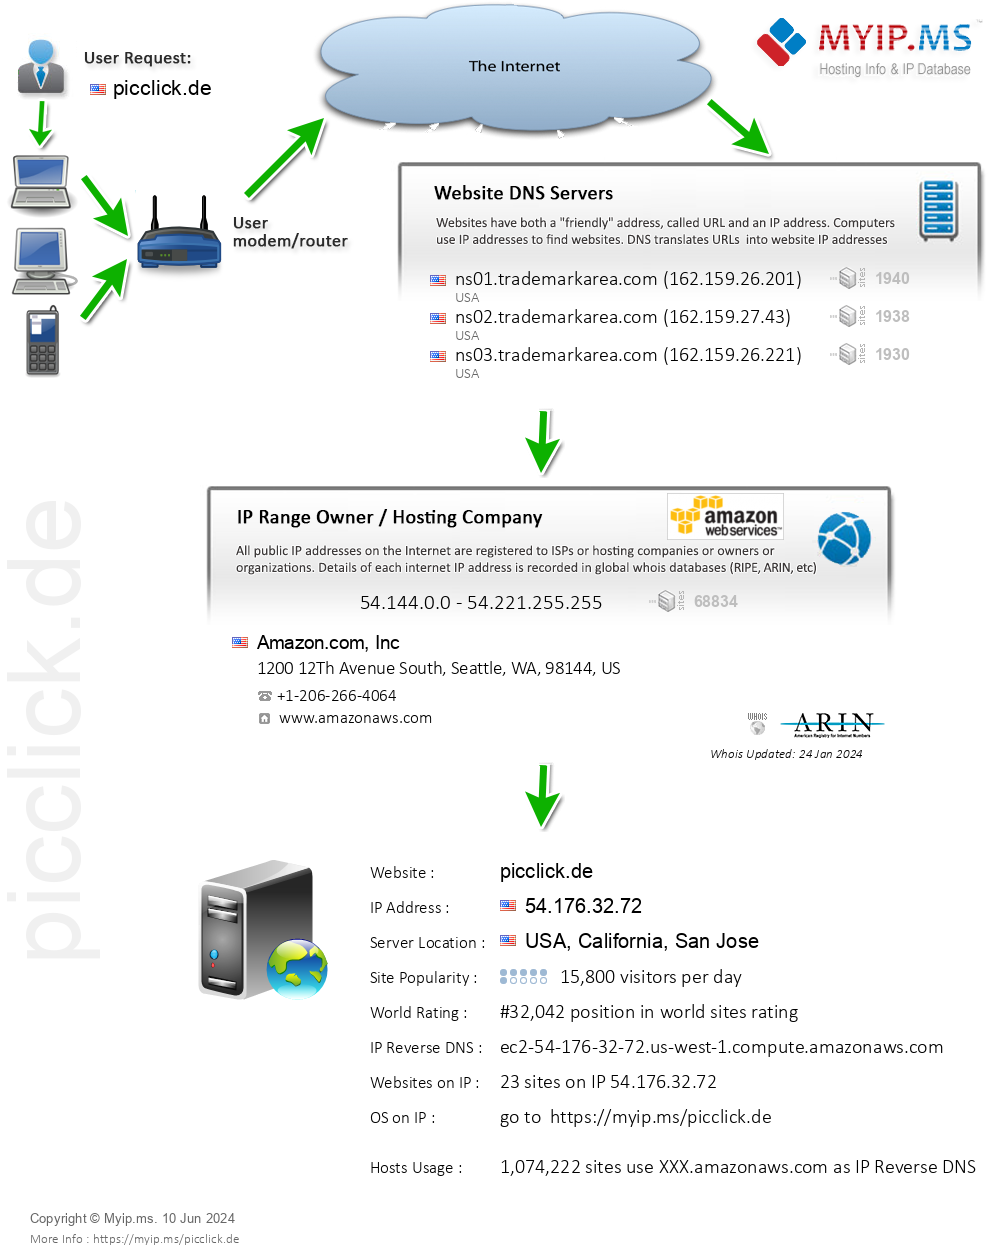 Picclick.de - Website Hosting Visual IP Diagram